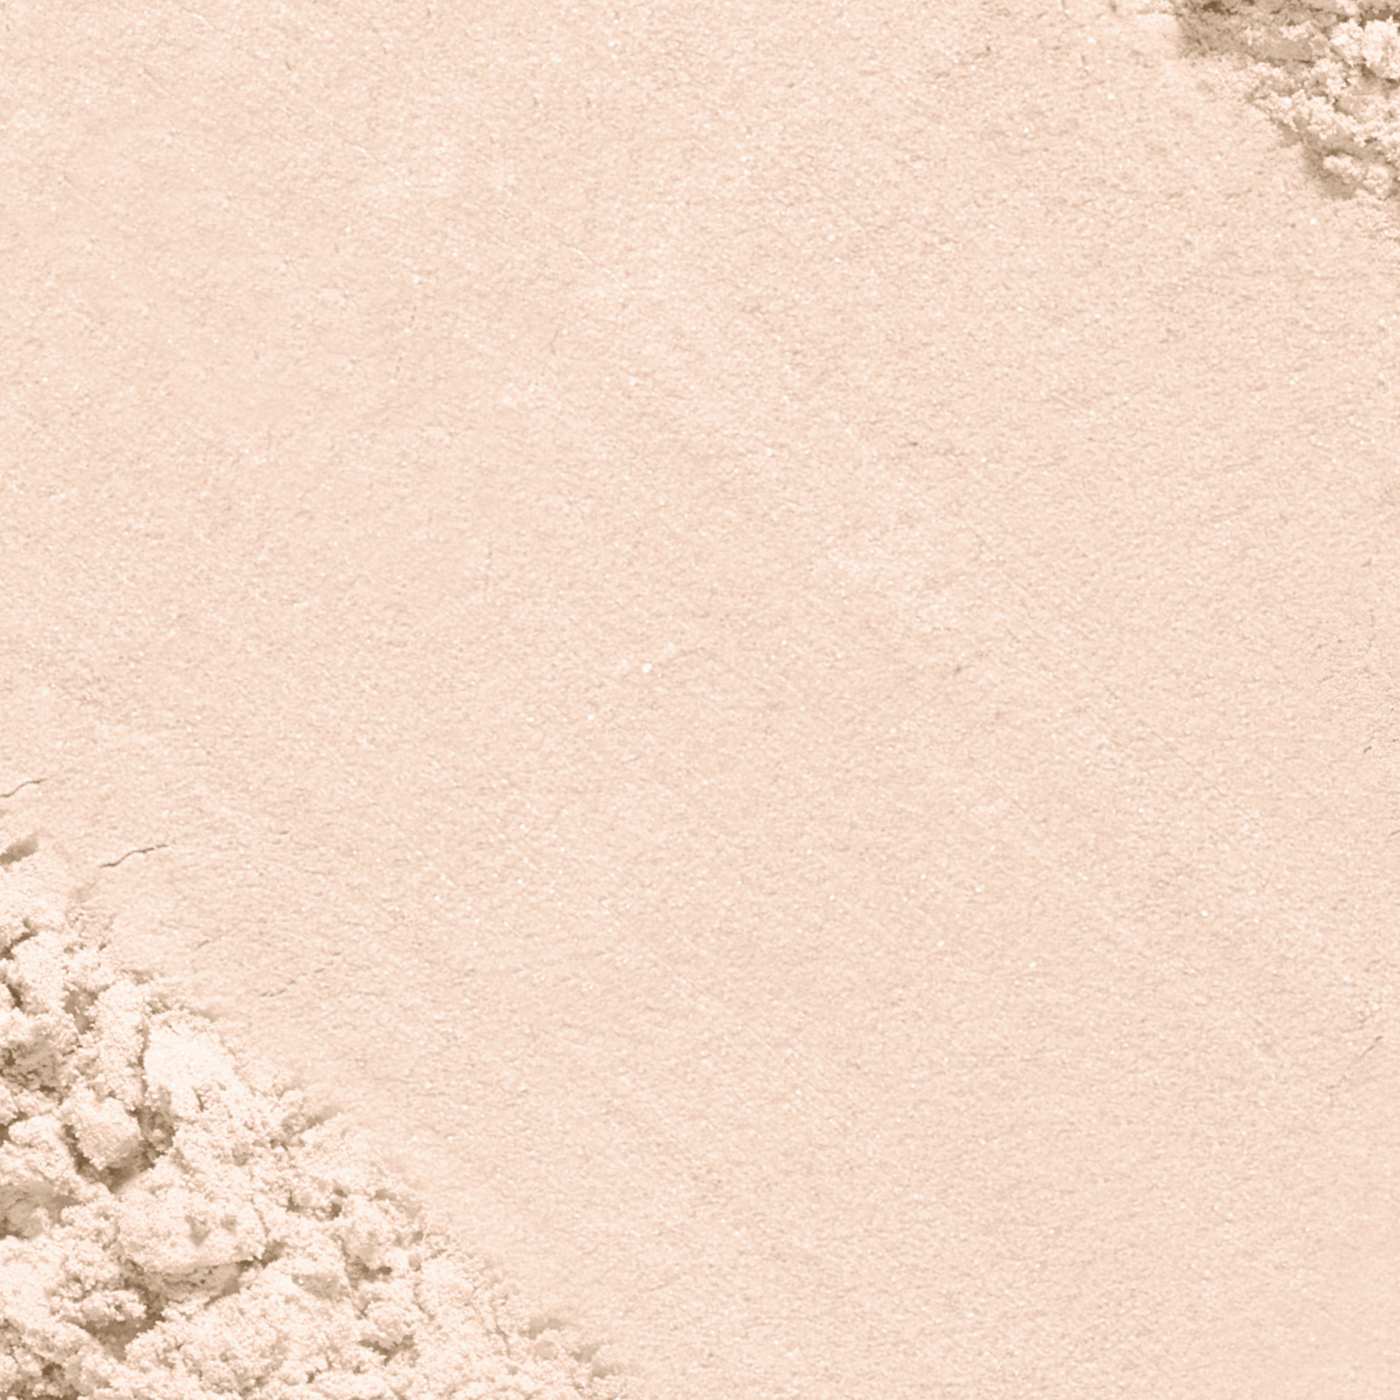 L'Oréal Paris True Match Super-Blendable Oil Free Makeup Powder Soft Ivory; image 4 of 5